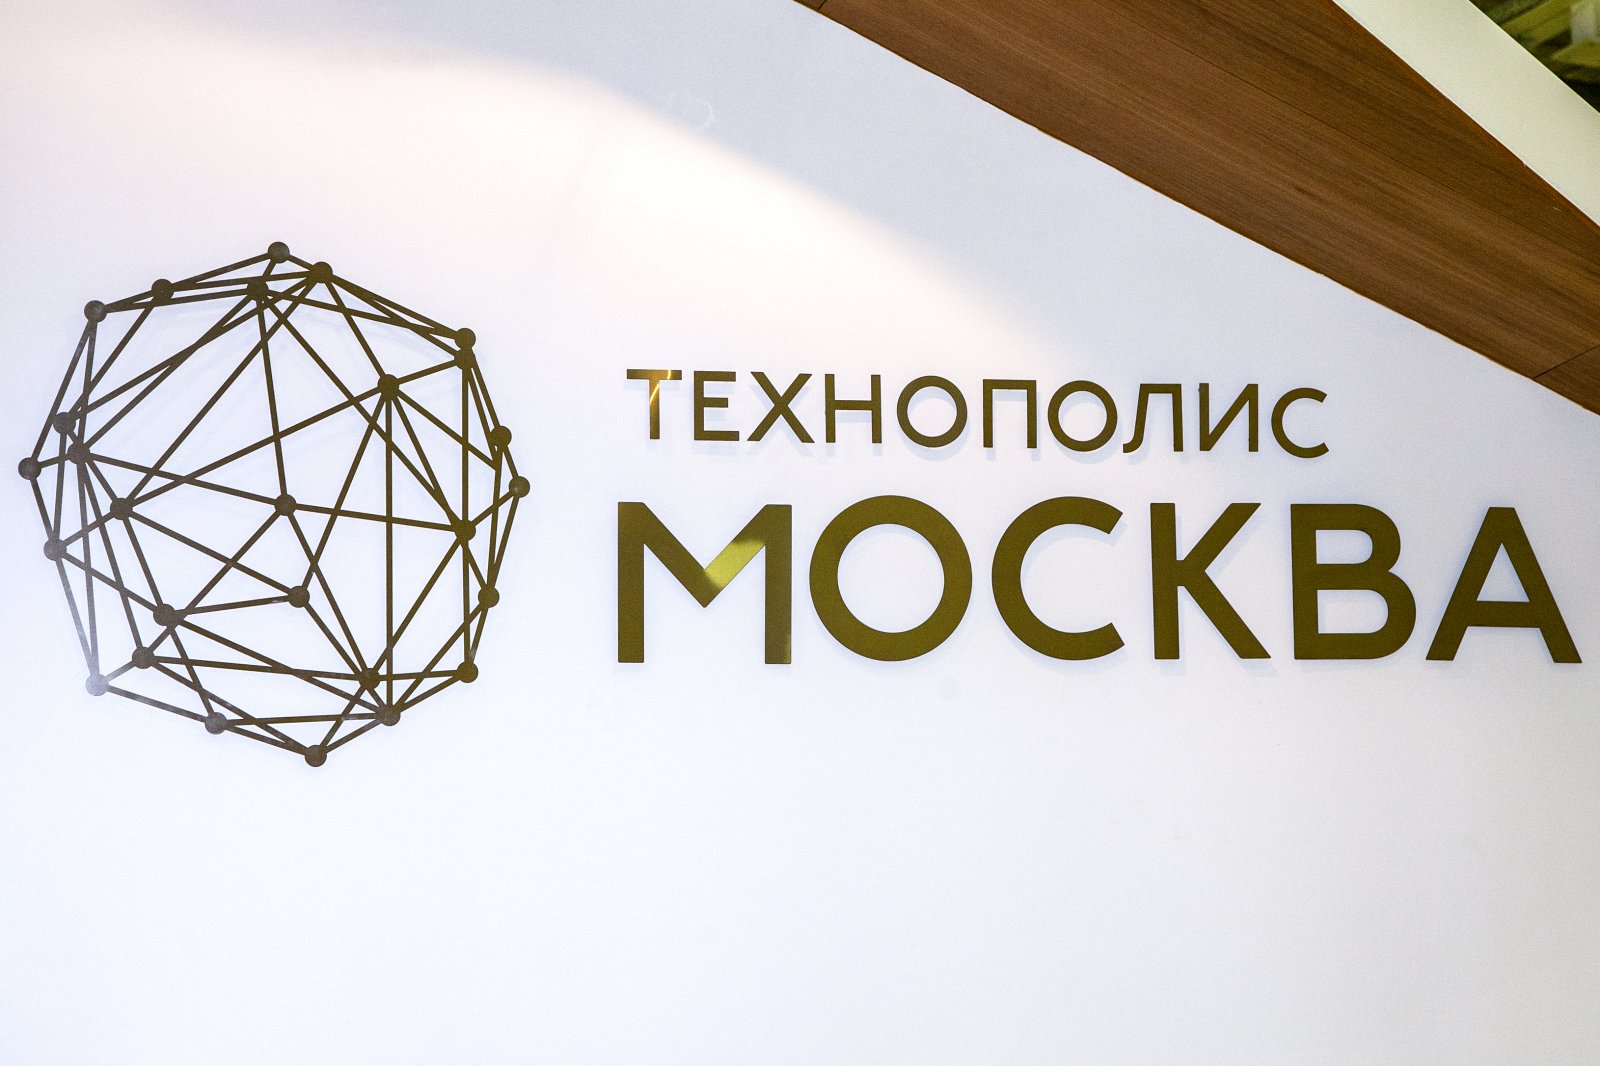 Более 240 студентов прошли стажировку в компаниях ОЭЗ «Технополис “Москва”» в 2021 году - фото 1